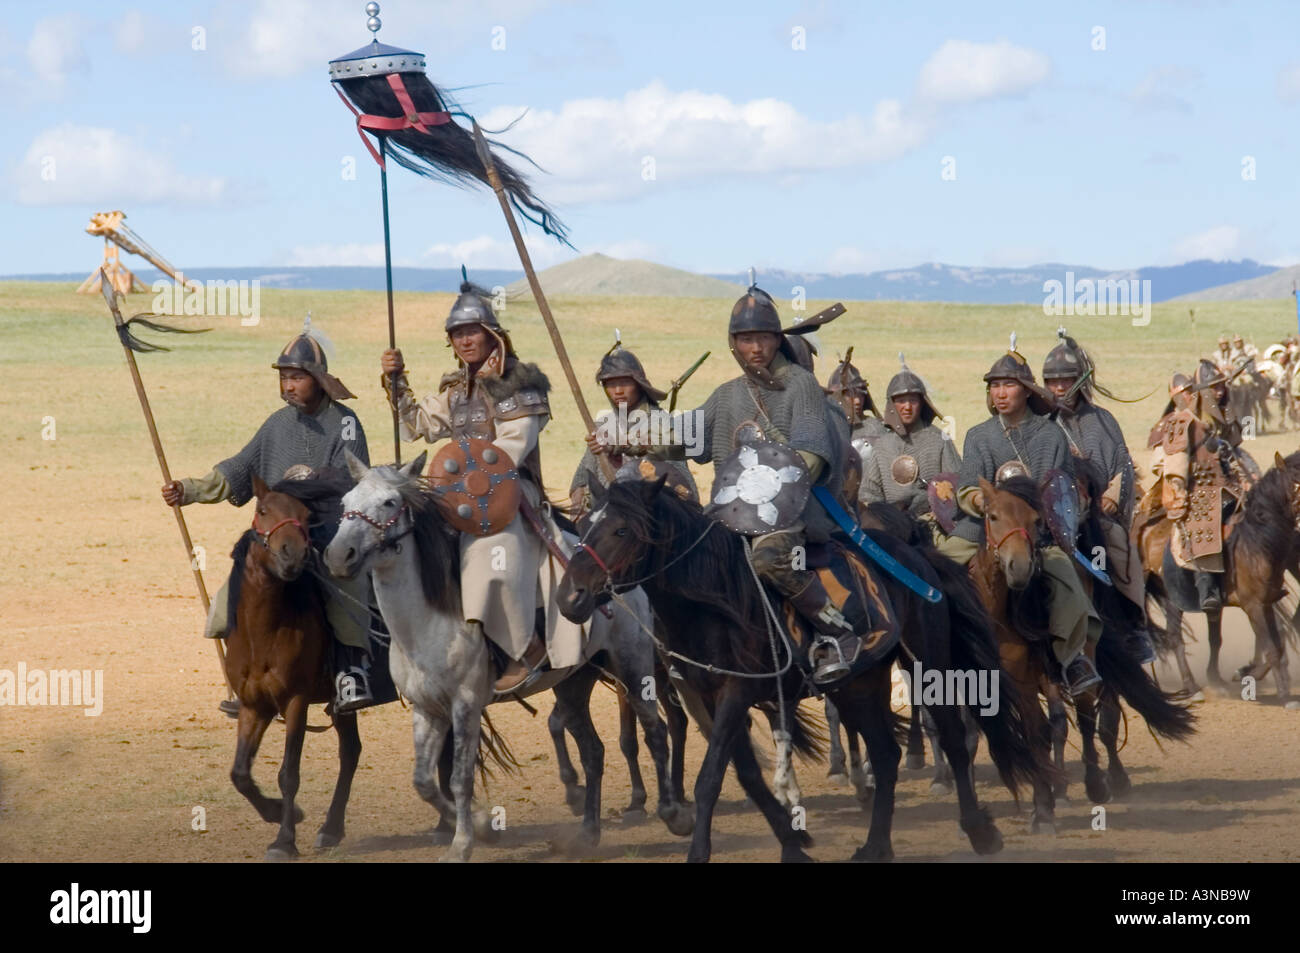 Armado de la caballería de Mongolia con black yak-tail guerra banners incluyendo un caballo de ojos azules Foto de stock